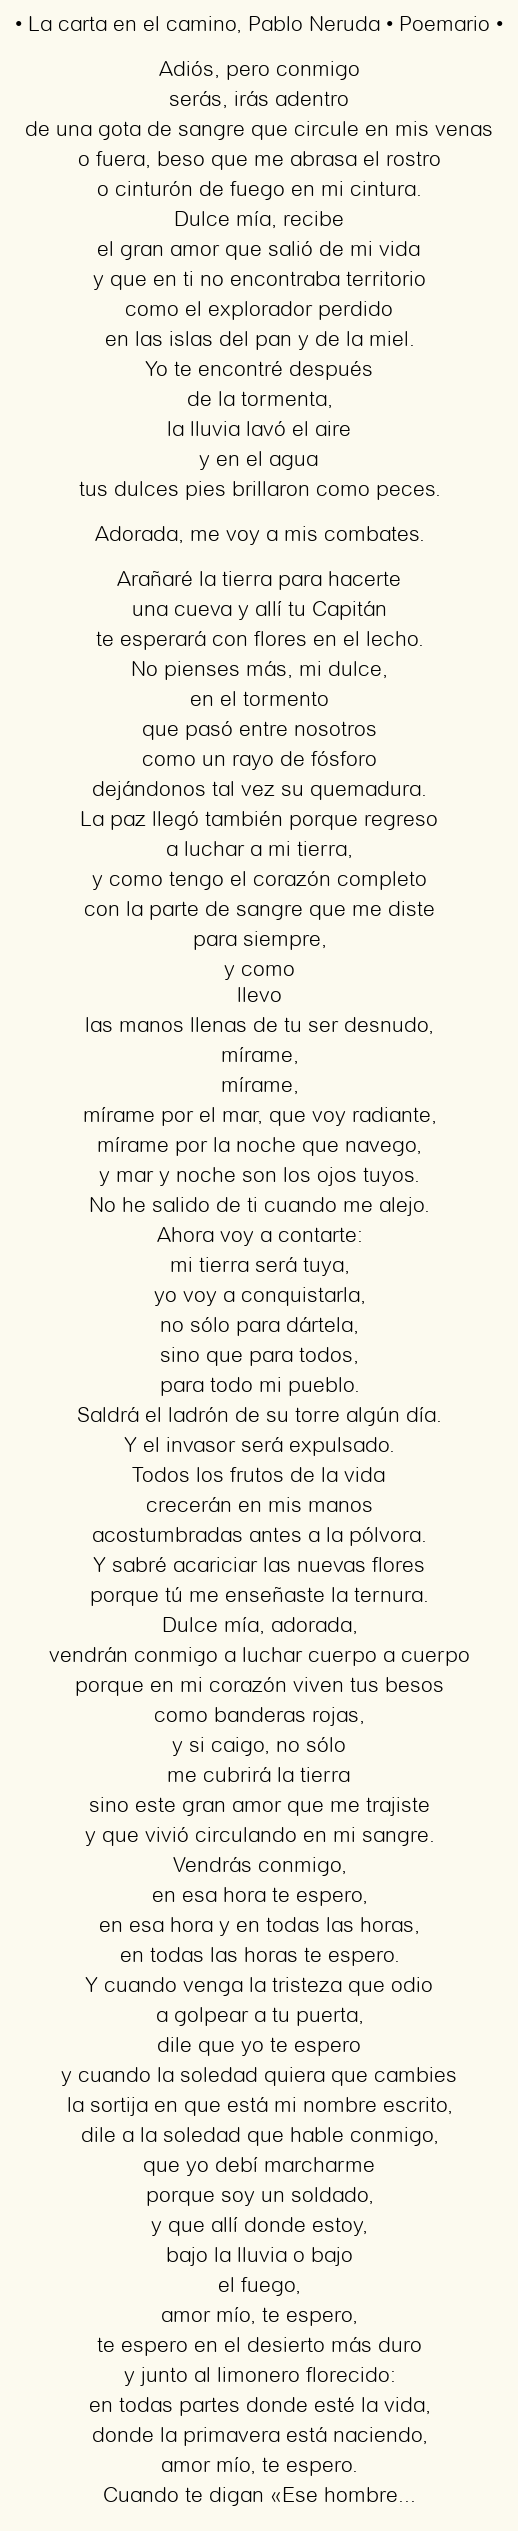 Imagen con el poema La carta en el camino, por Pablo Neruda